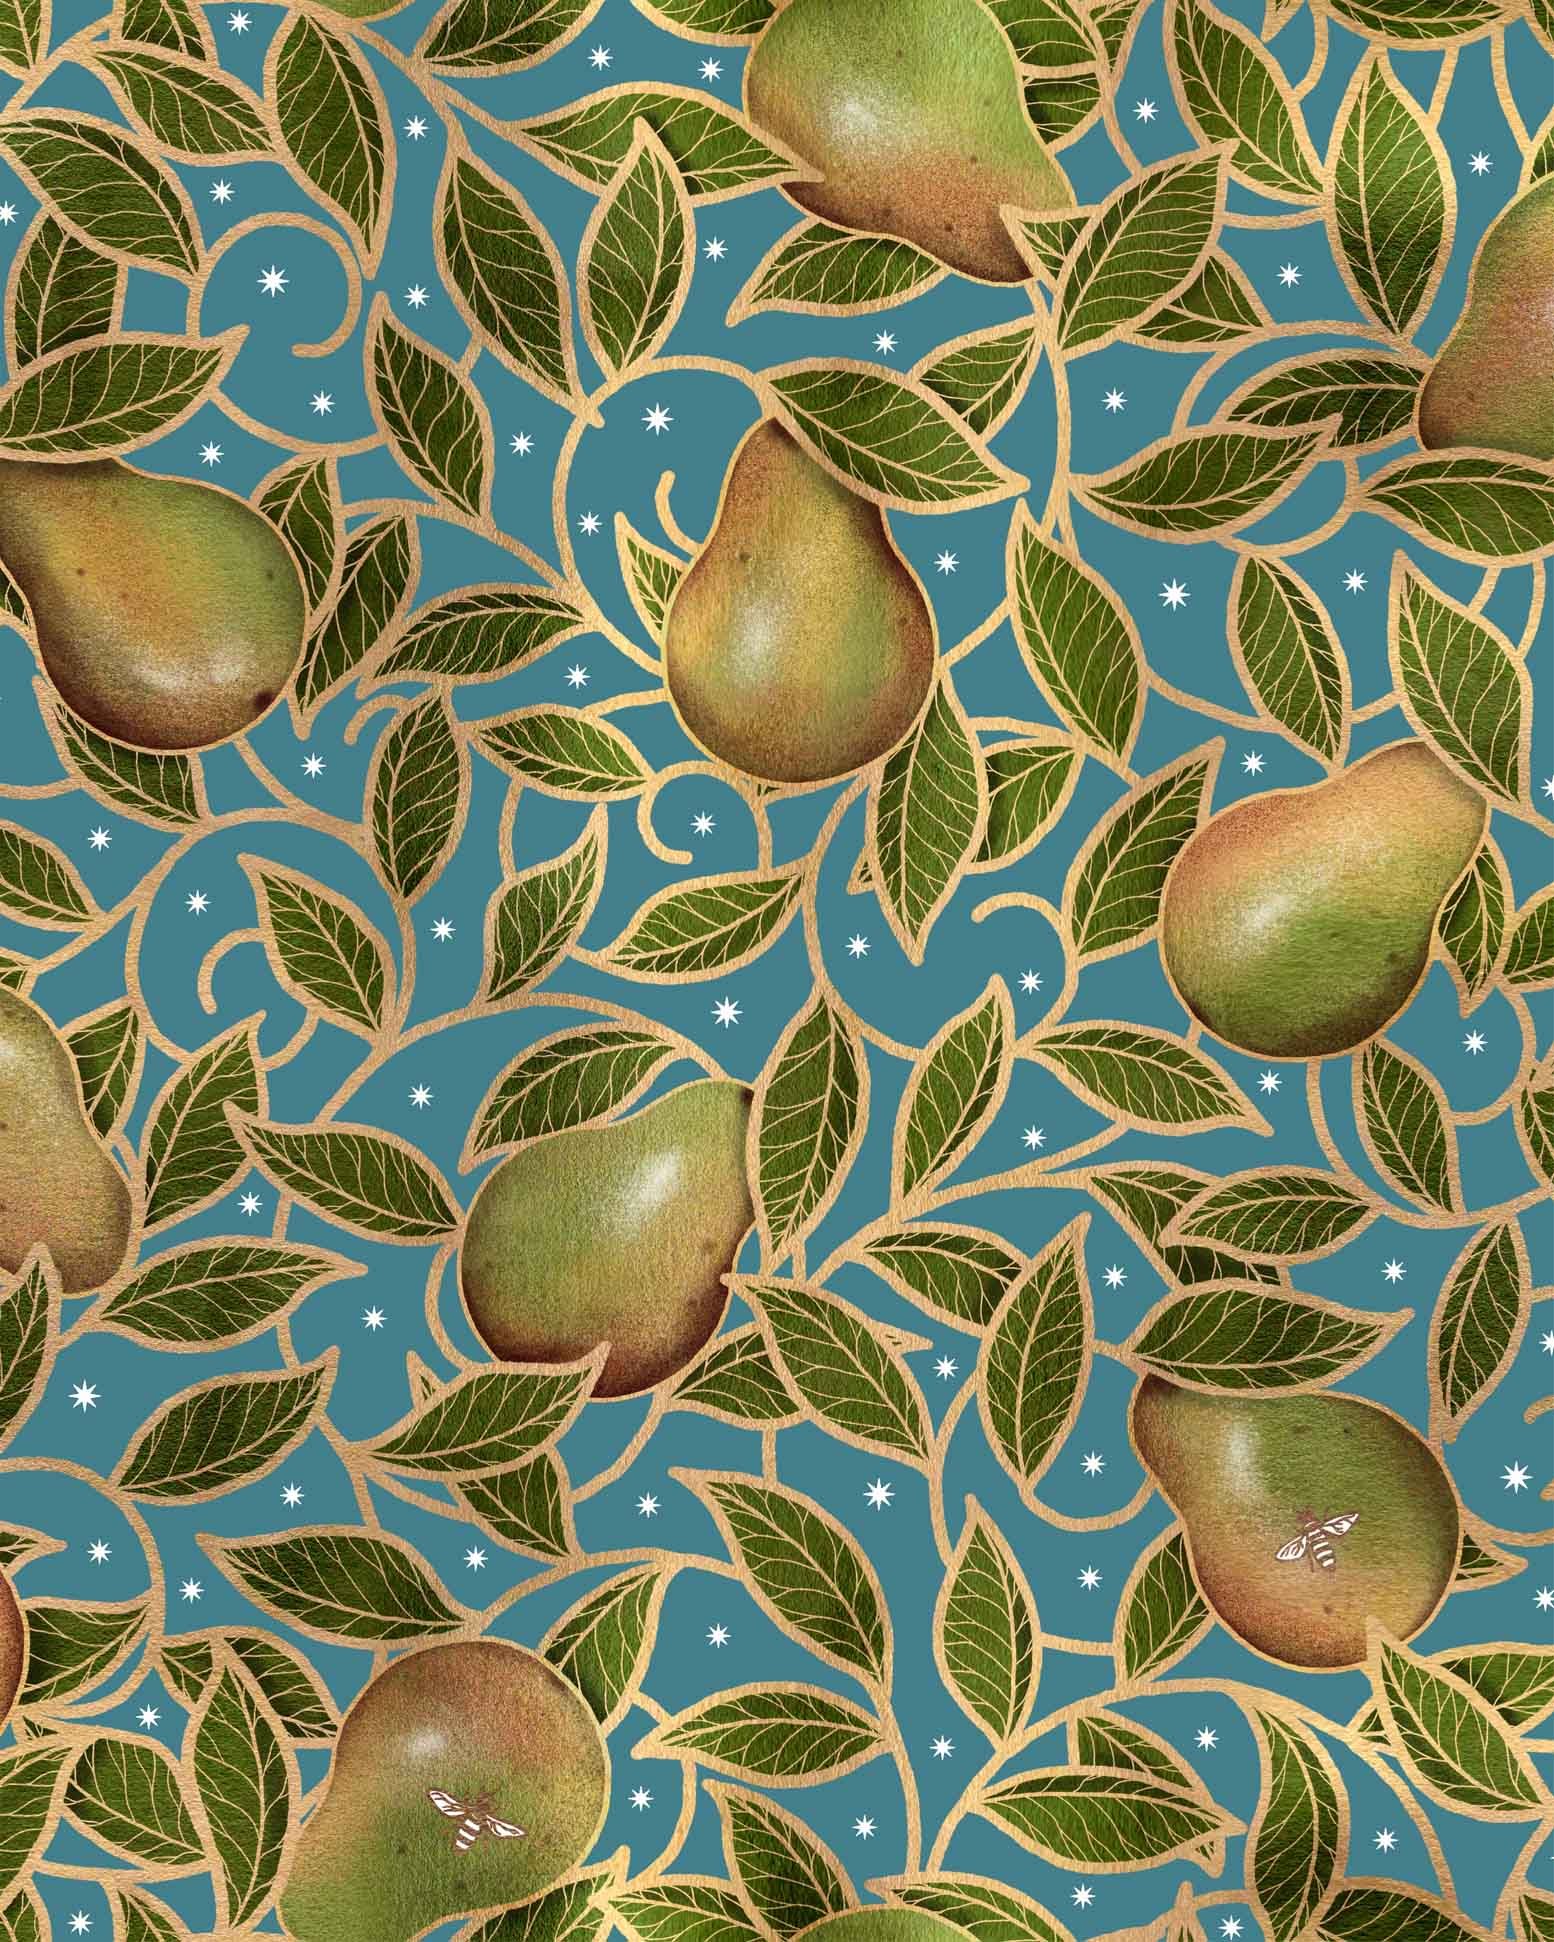 pears.jpg